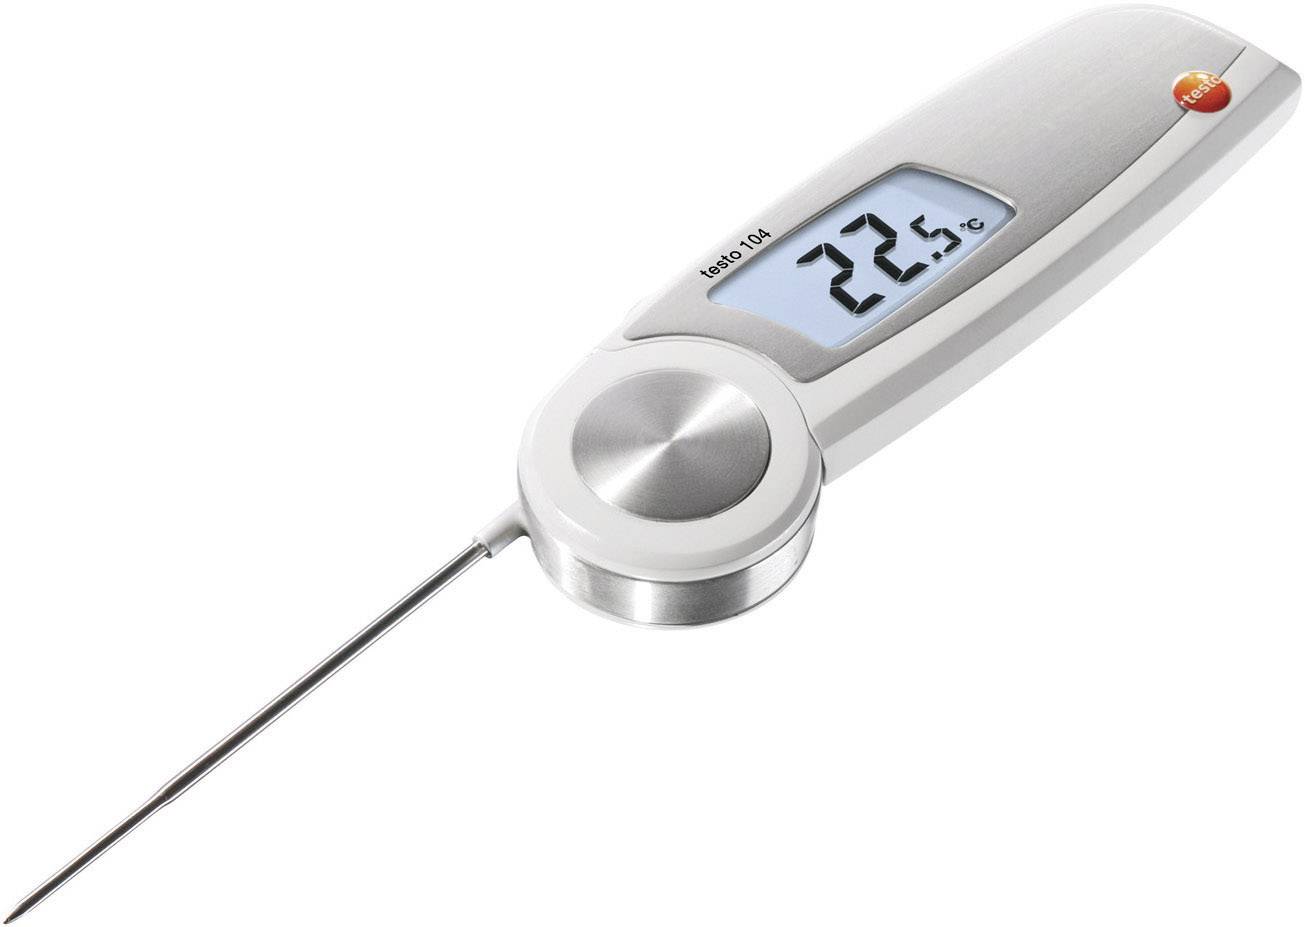 TESTO Einstichthermometer (HACCP) testo testo 104 Messbereich Temperatur -50 bis 250 °C Fühler-Typ N